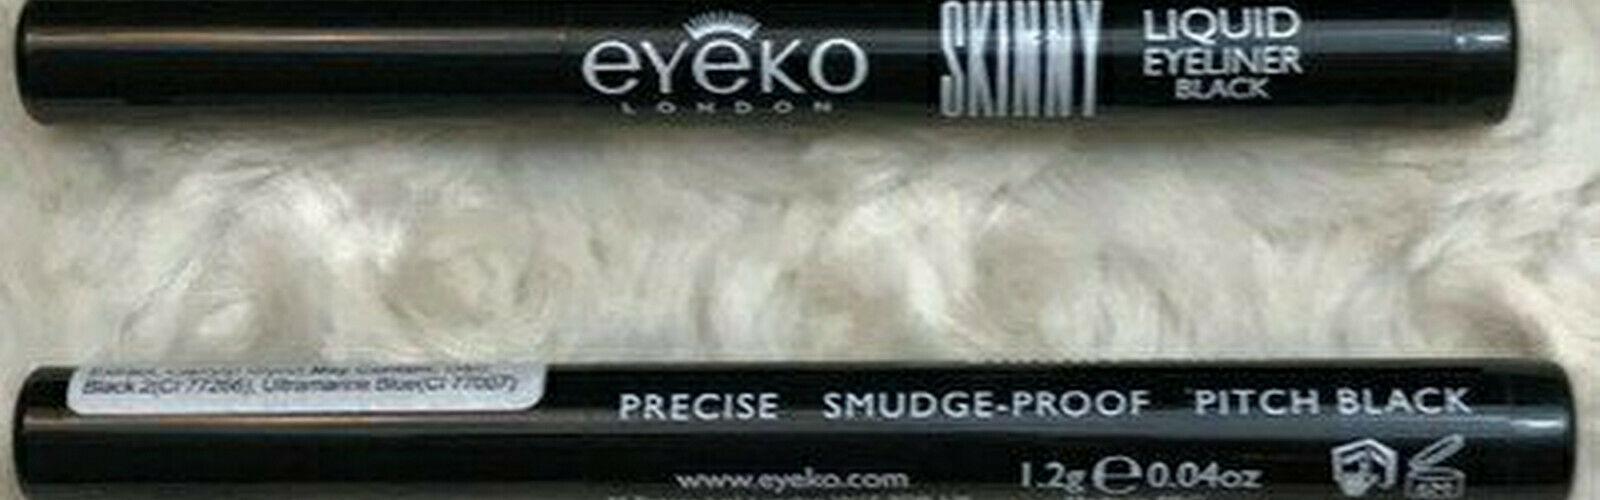 2X Eyeko London Skinny Liquid Eyeliner ~ Black ~ Travel .04oz ~ BRAND NEW !!